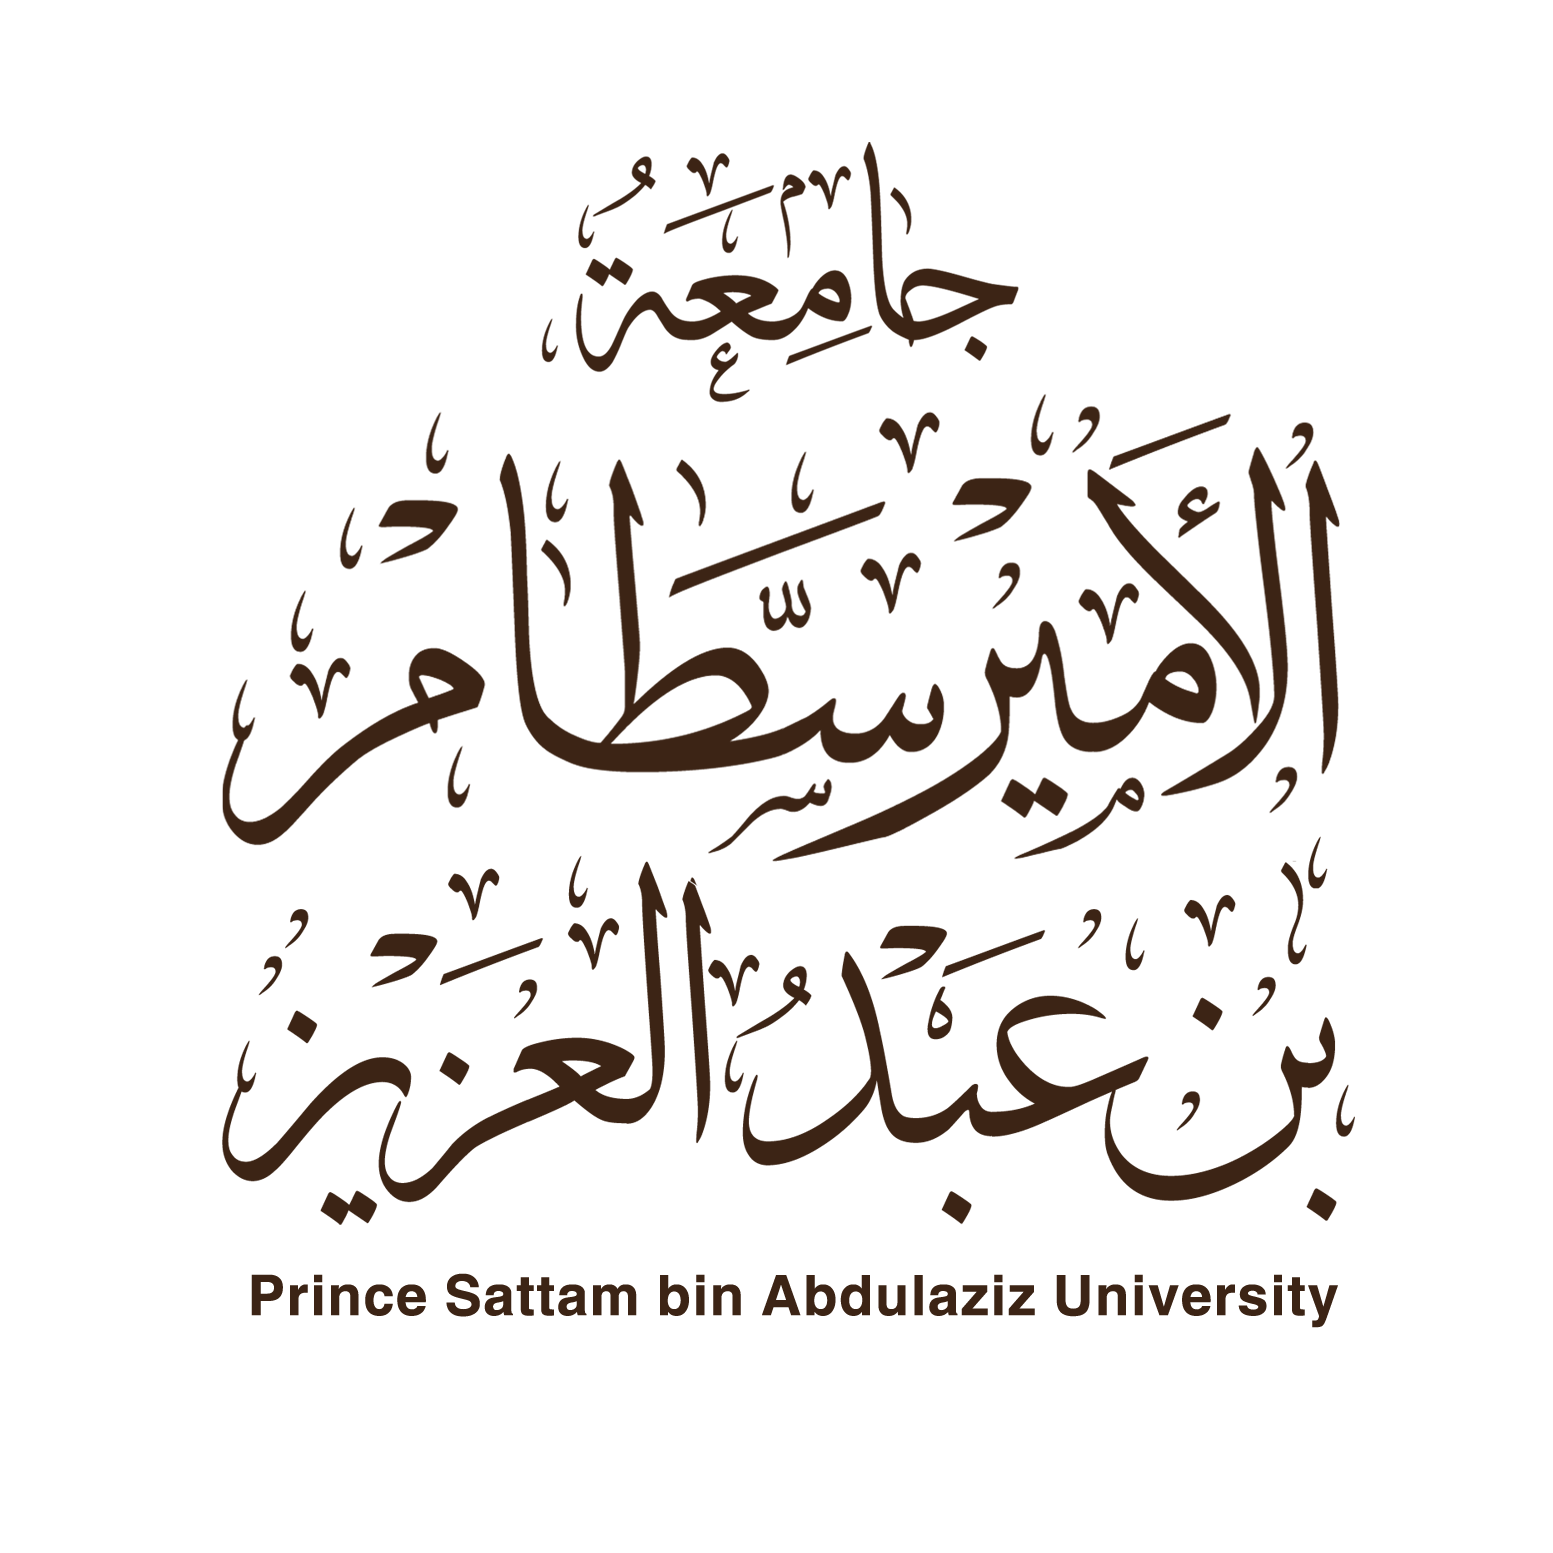 جامعة الأمير سطام بن عبدالعزيز – جامعة سعودية تقع في مدينة الخرج